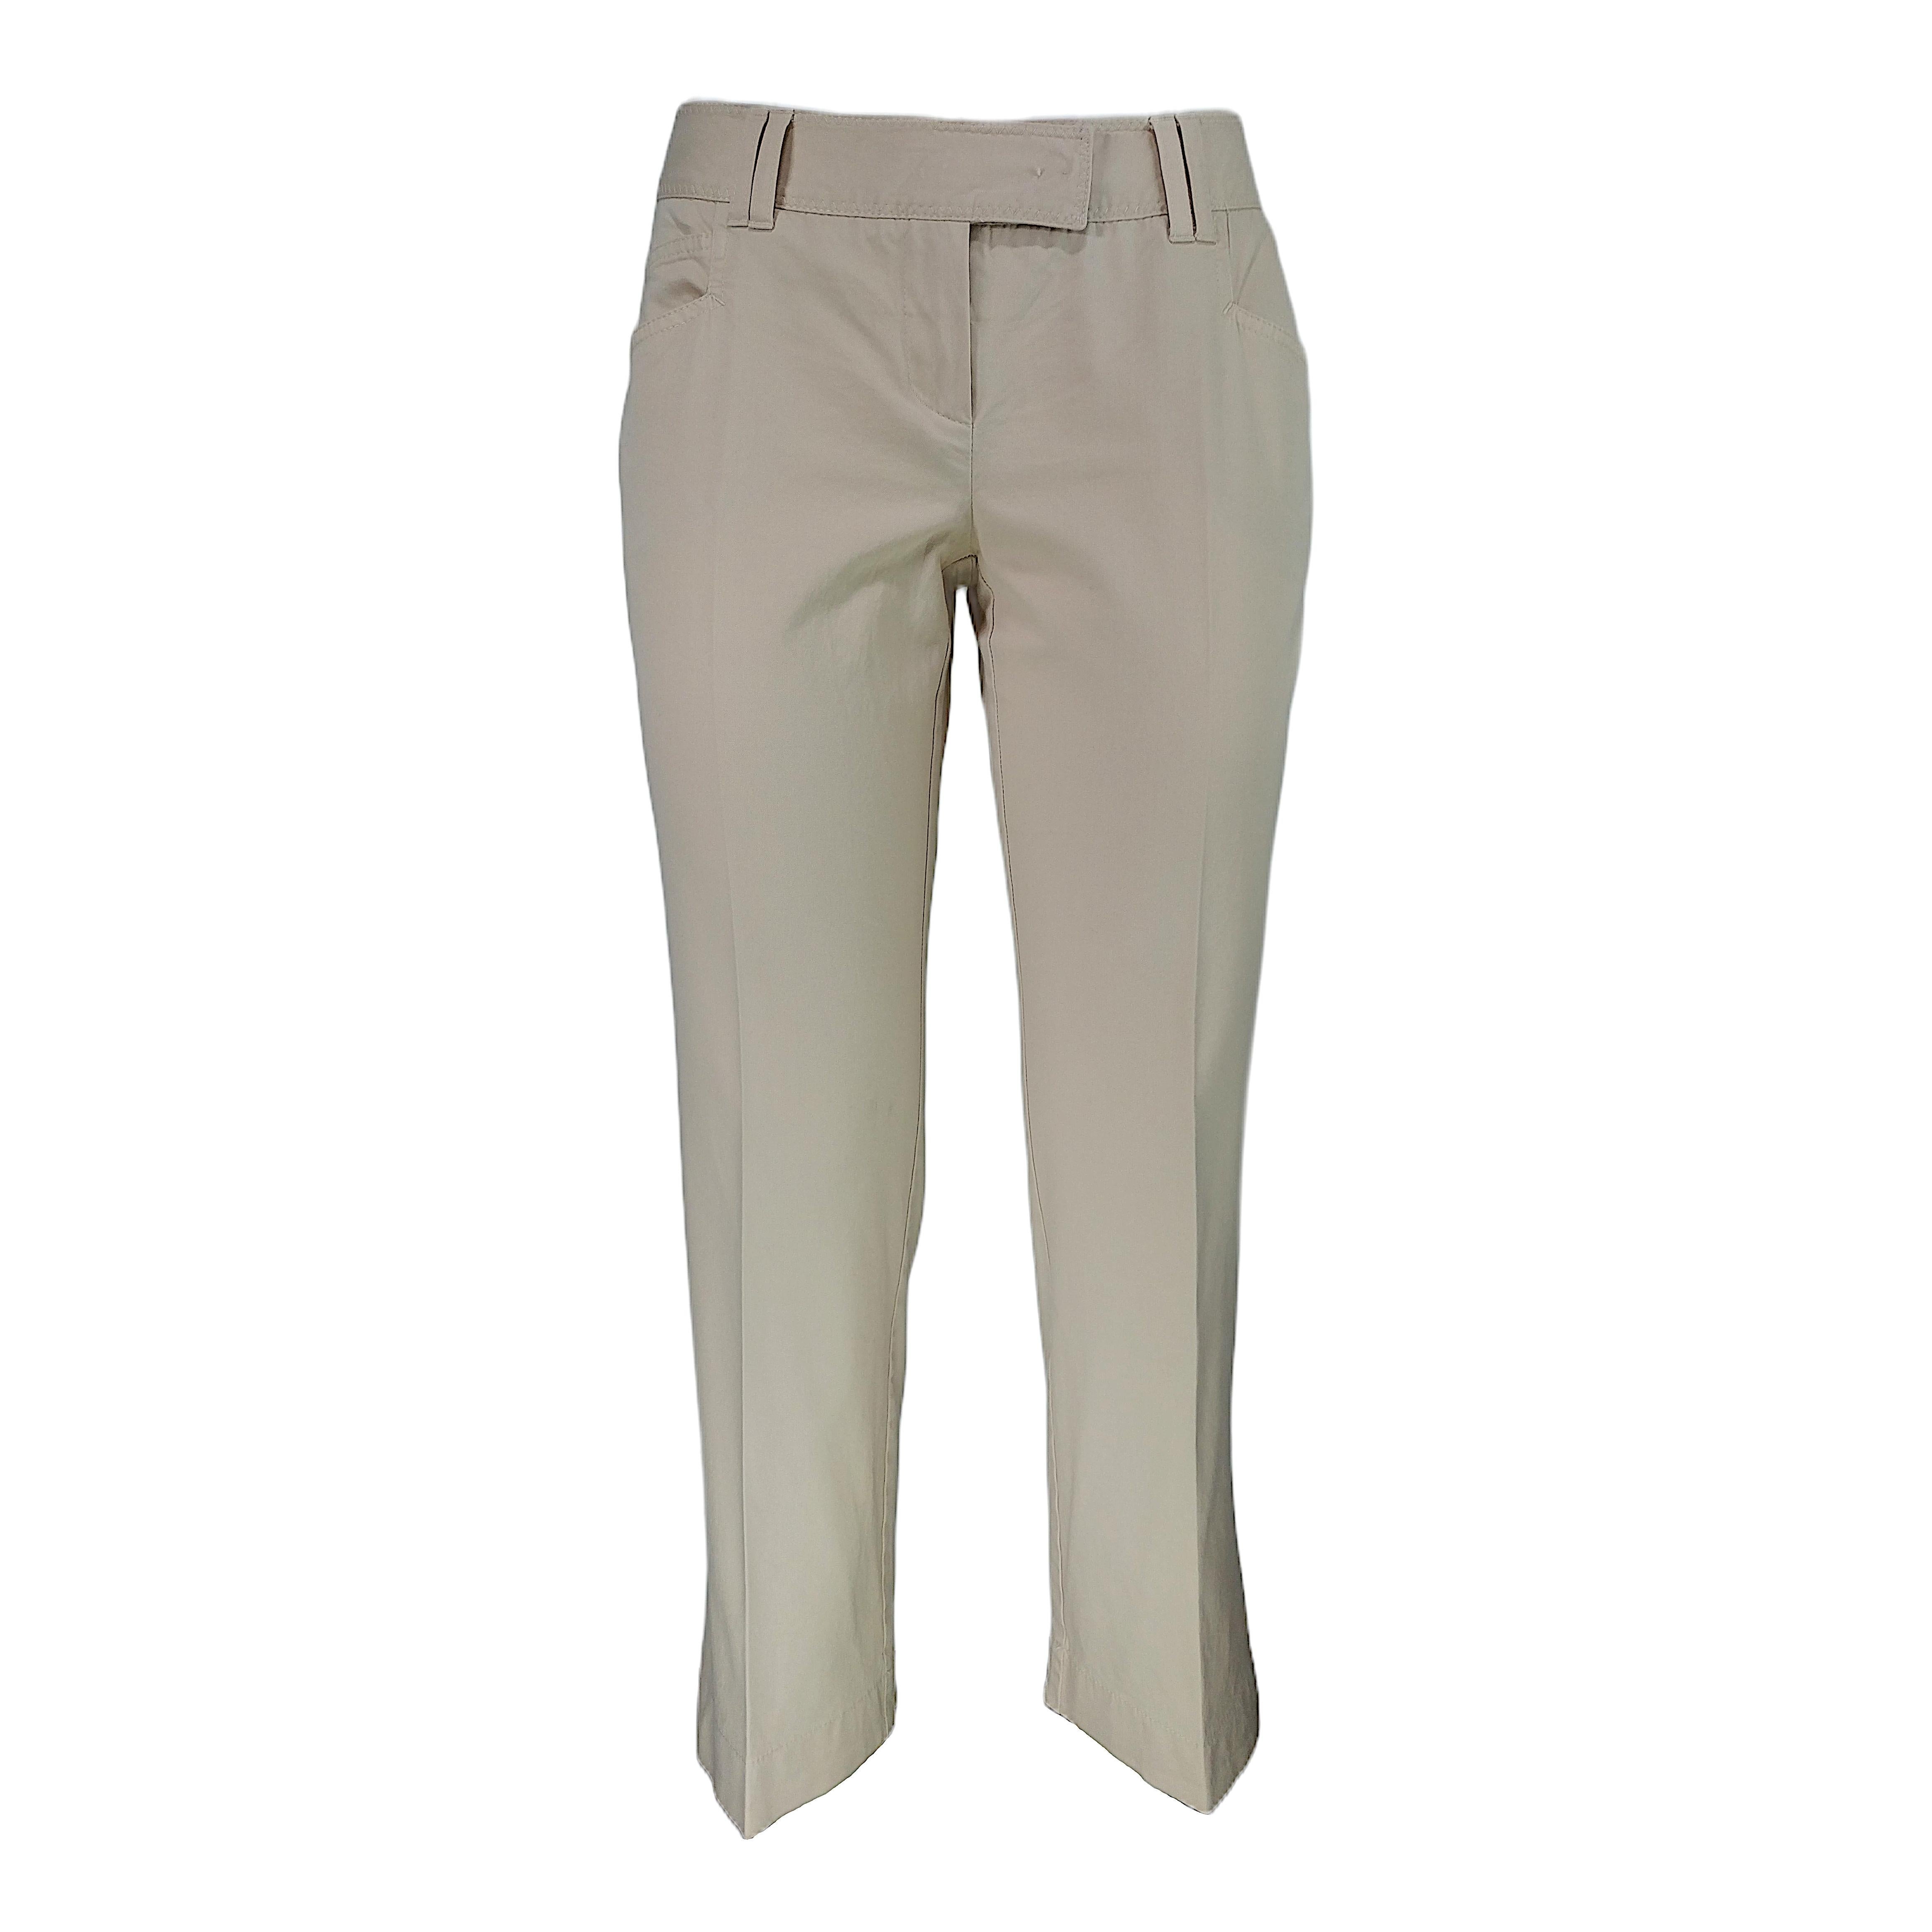 CHRISTIAN DIOR - Pantalon Capri vintage en coton beige, taille 7/8  Taille 6US 38EU